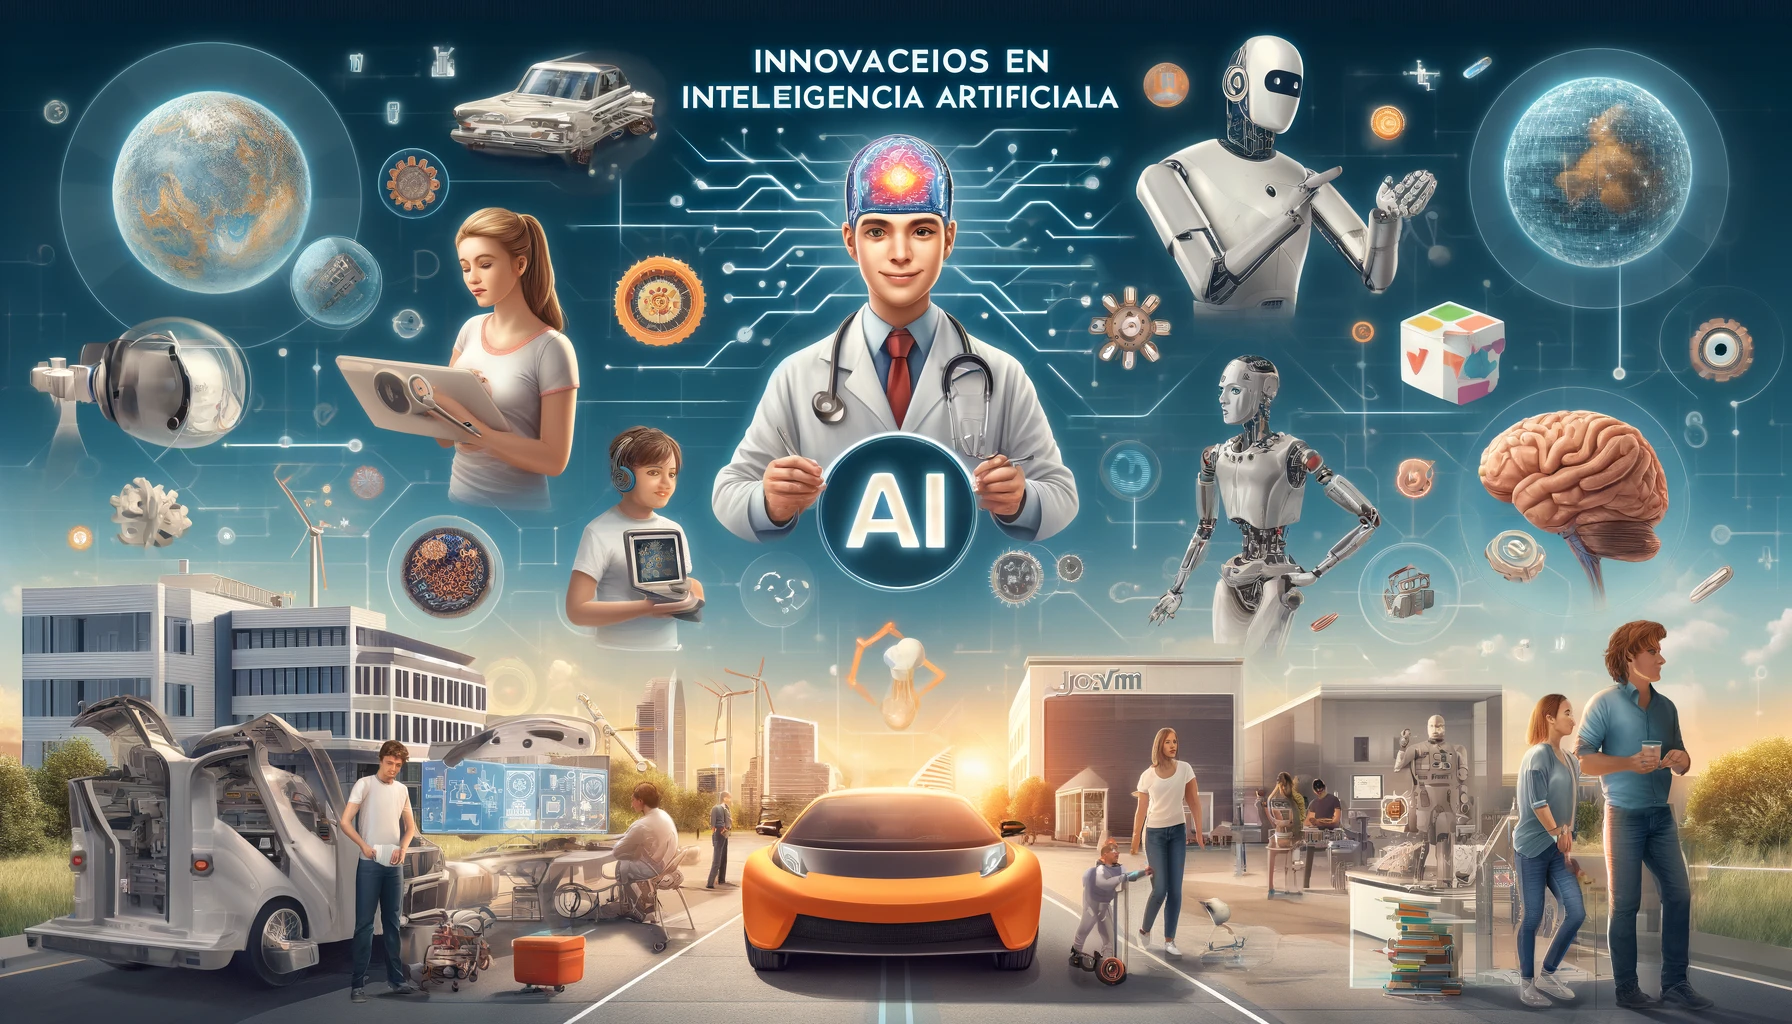 Escenas de tendencias de inteligencia artificial en salud, automatización, vehículos autónomos, hogares inteligentes y educación personalizada. Josvim innovaciones en Inteligencia Artificial.